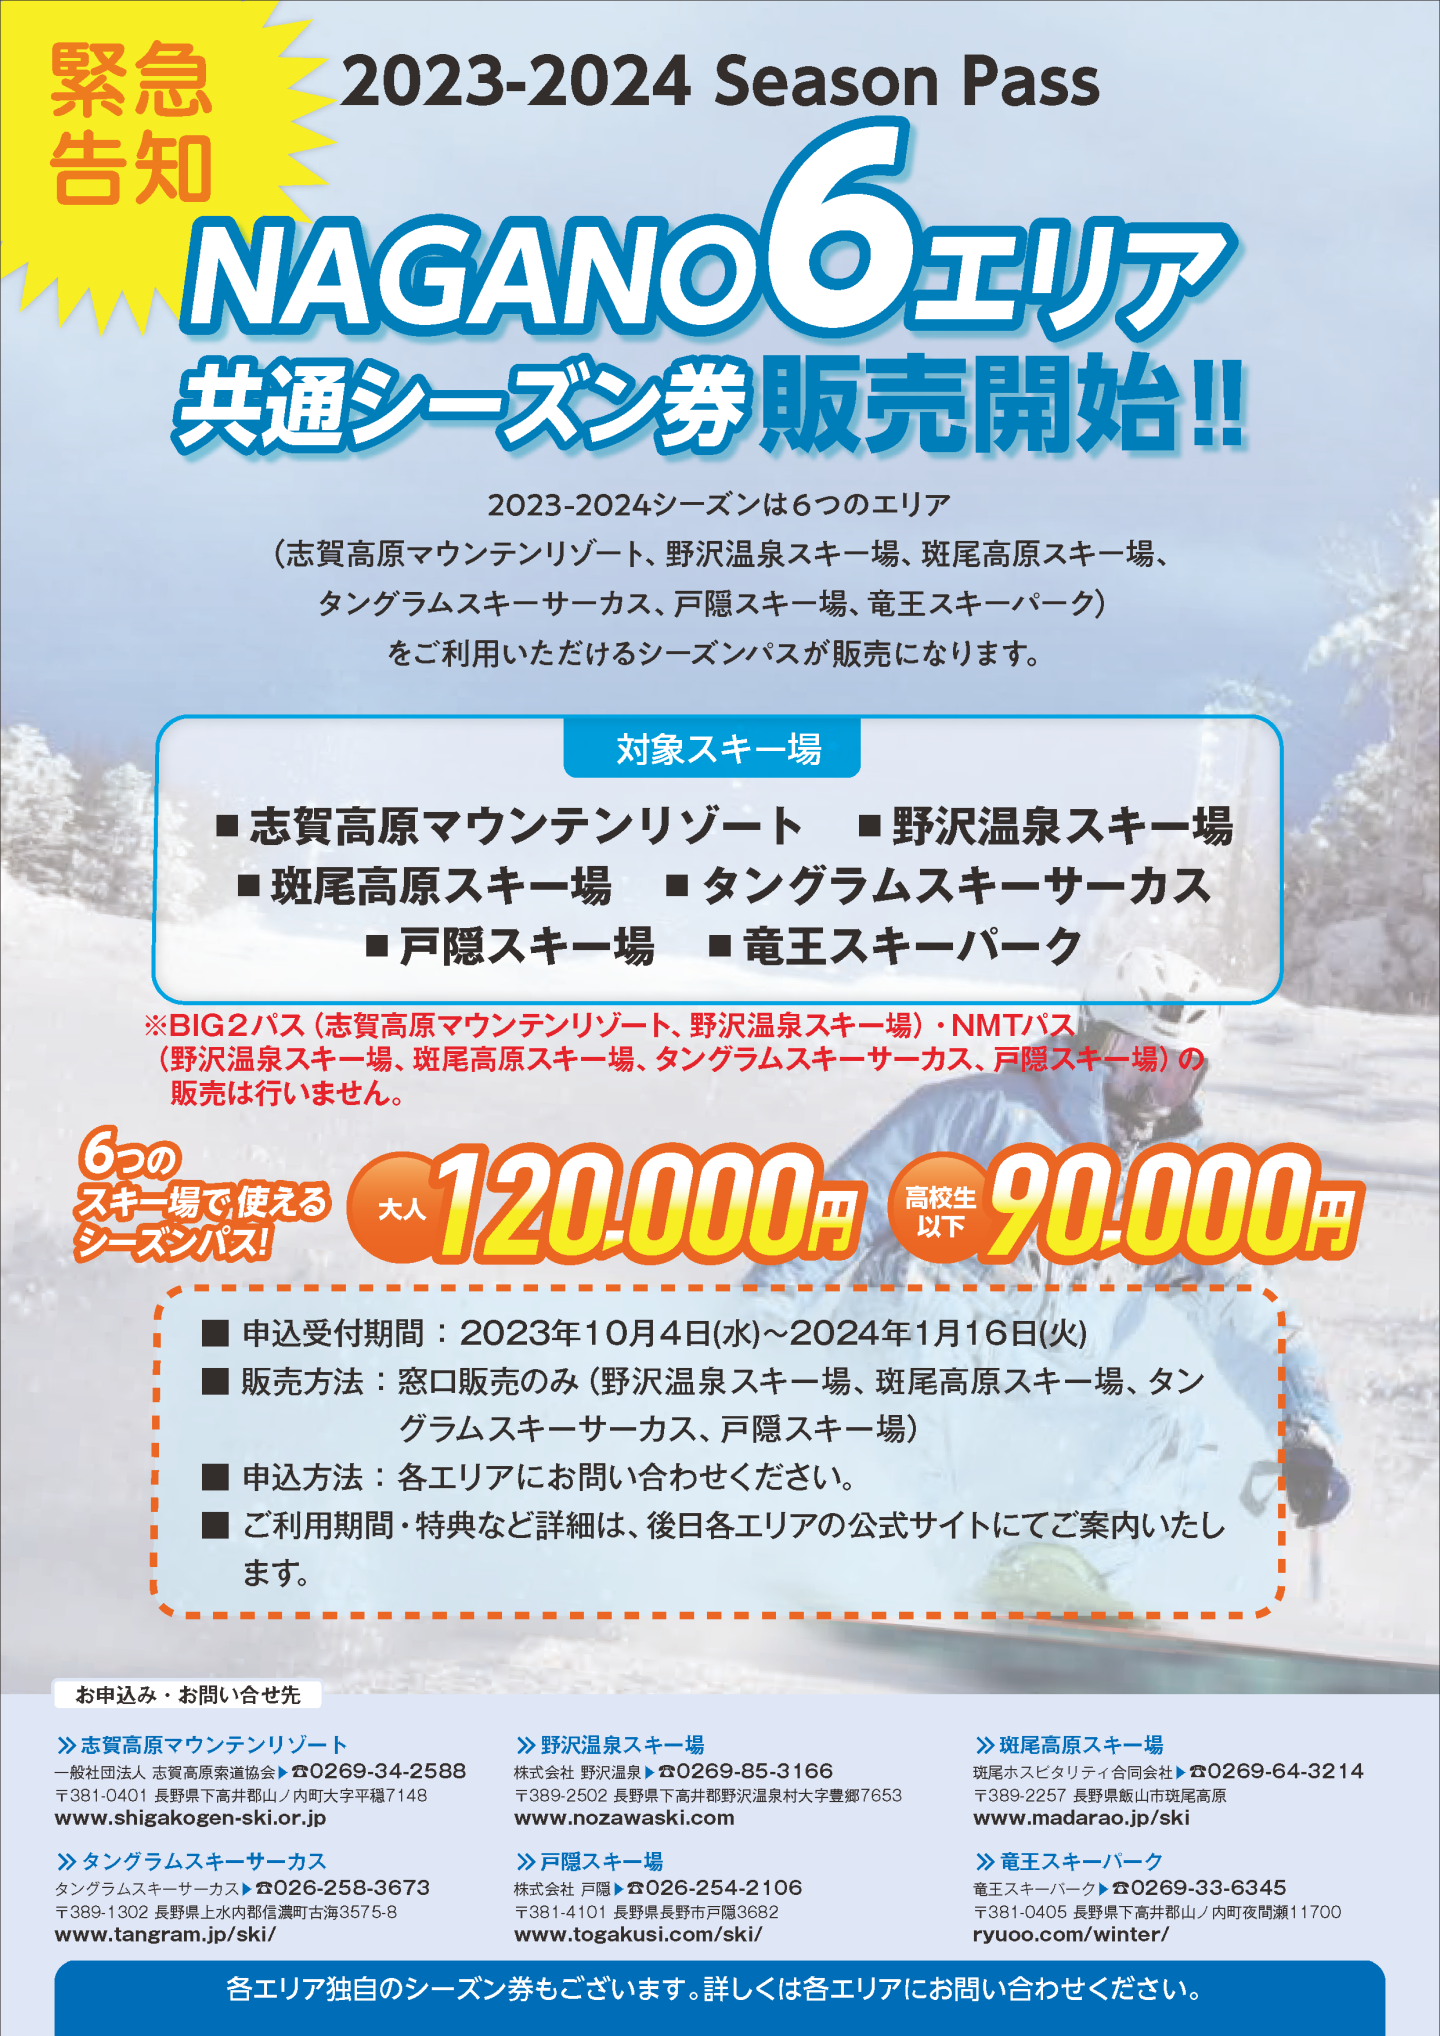 関東18スキー場 共通スキーリフト1日引換券 - ウィンタースポーツ